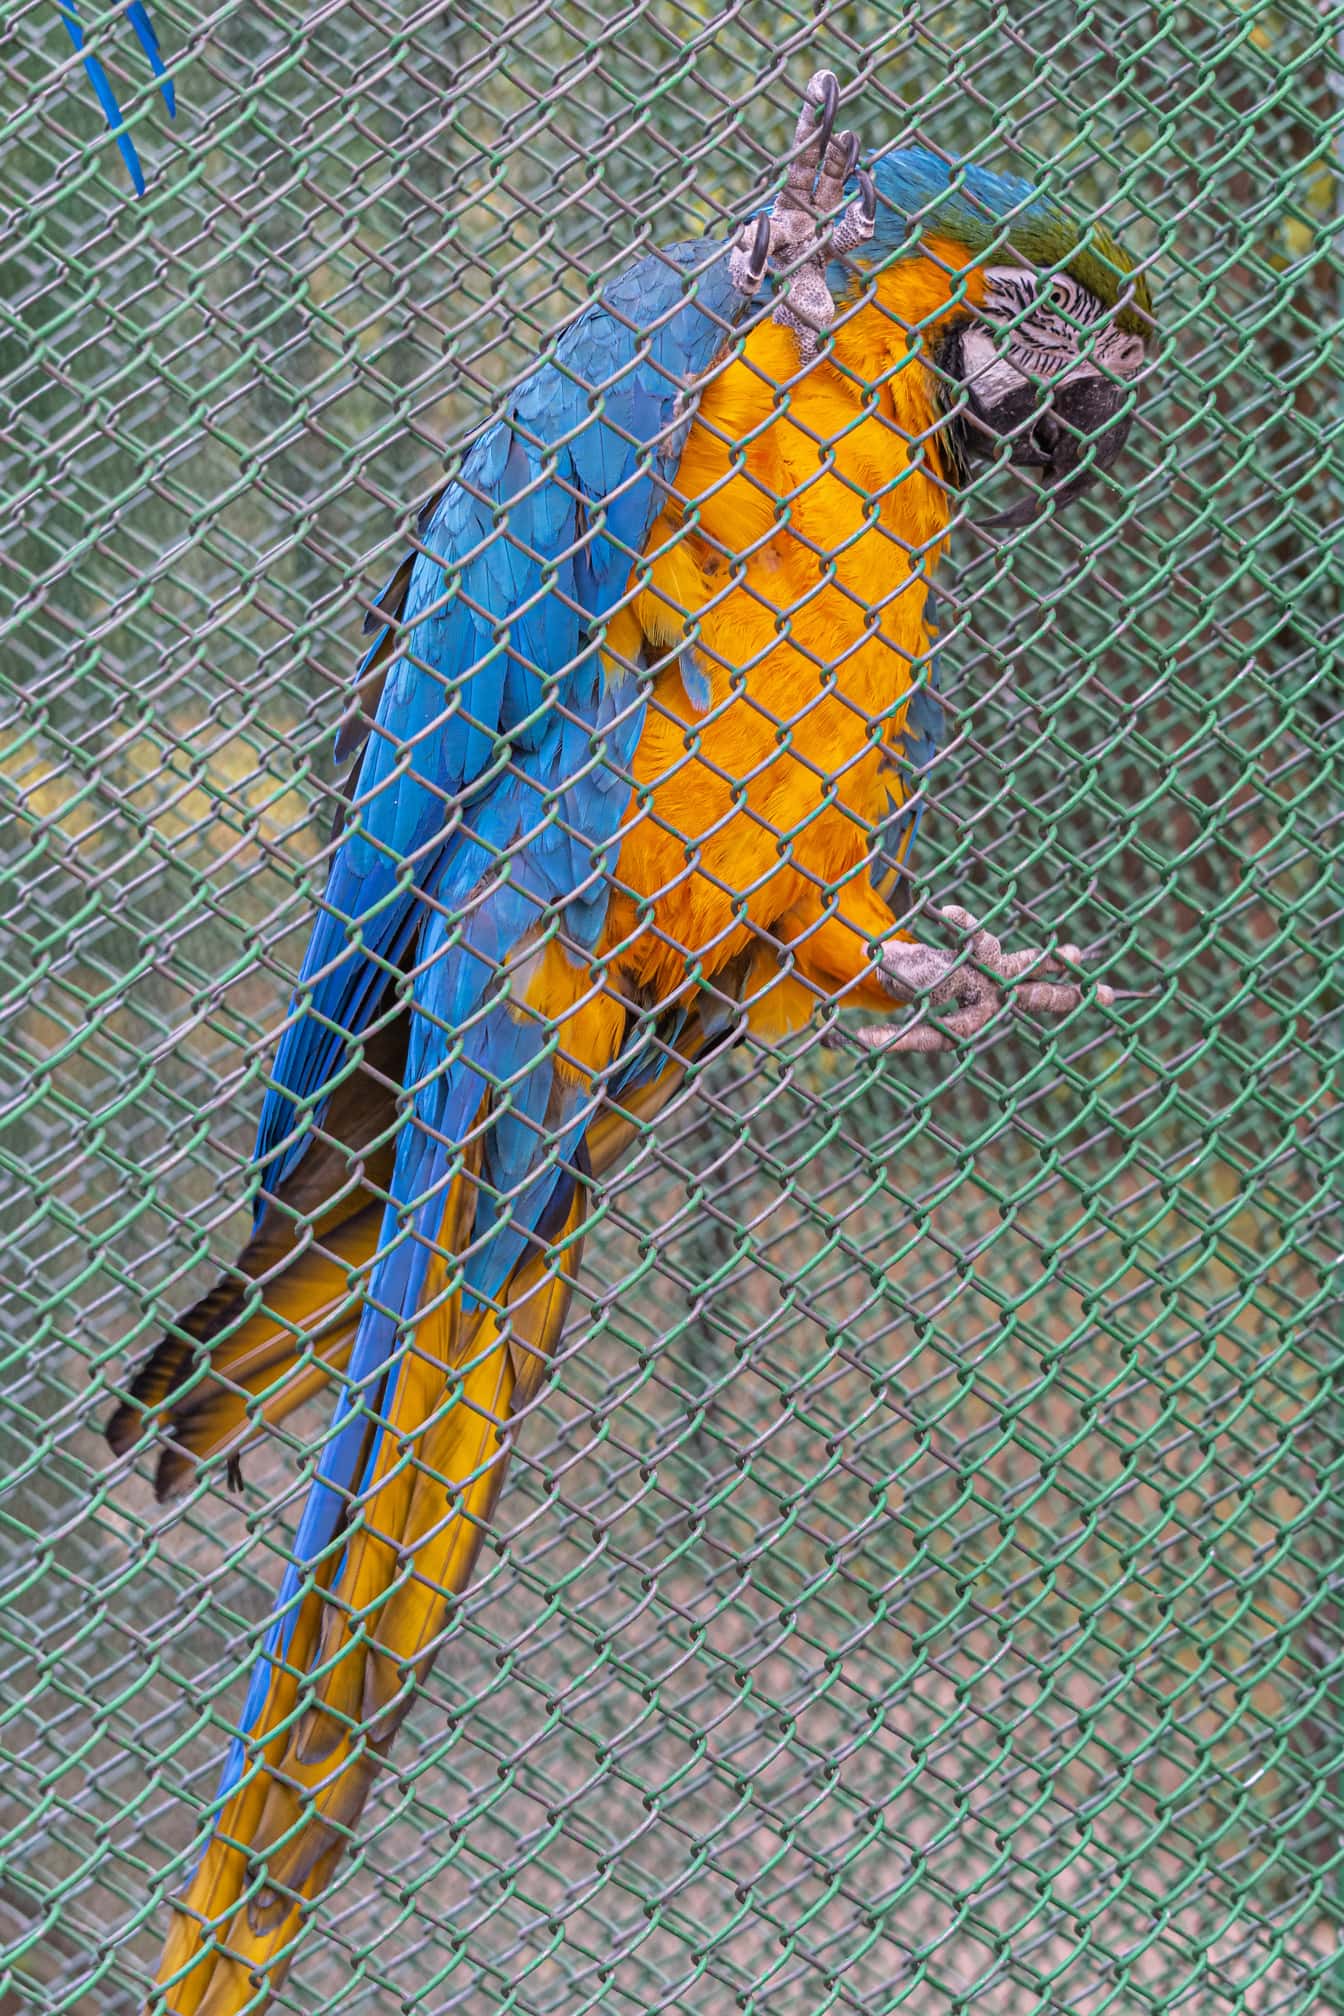 Uccello pappagallo giallo blu e arancione dell’ara (Ara ararauna) sulla recinzione della gabbia